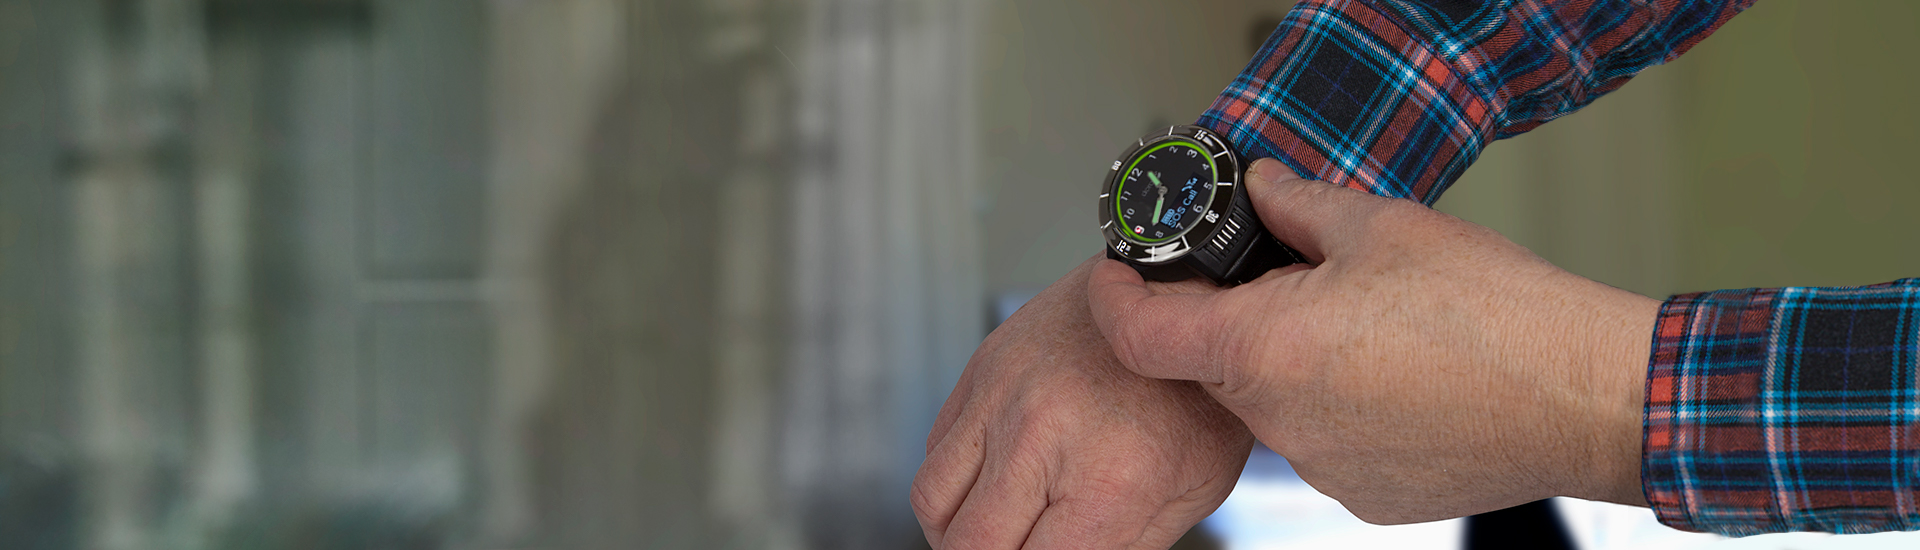 Eldre person med GPS-klokke på håndleddet